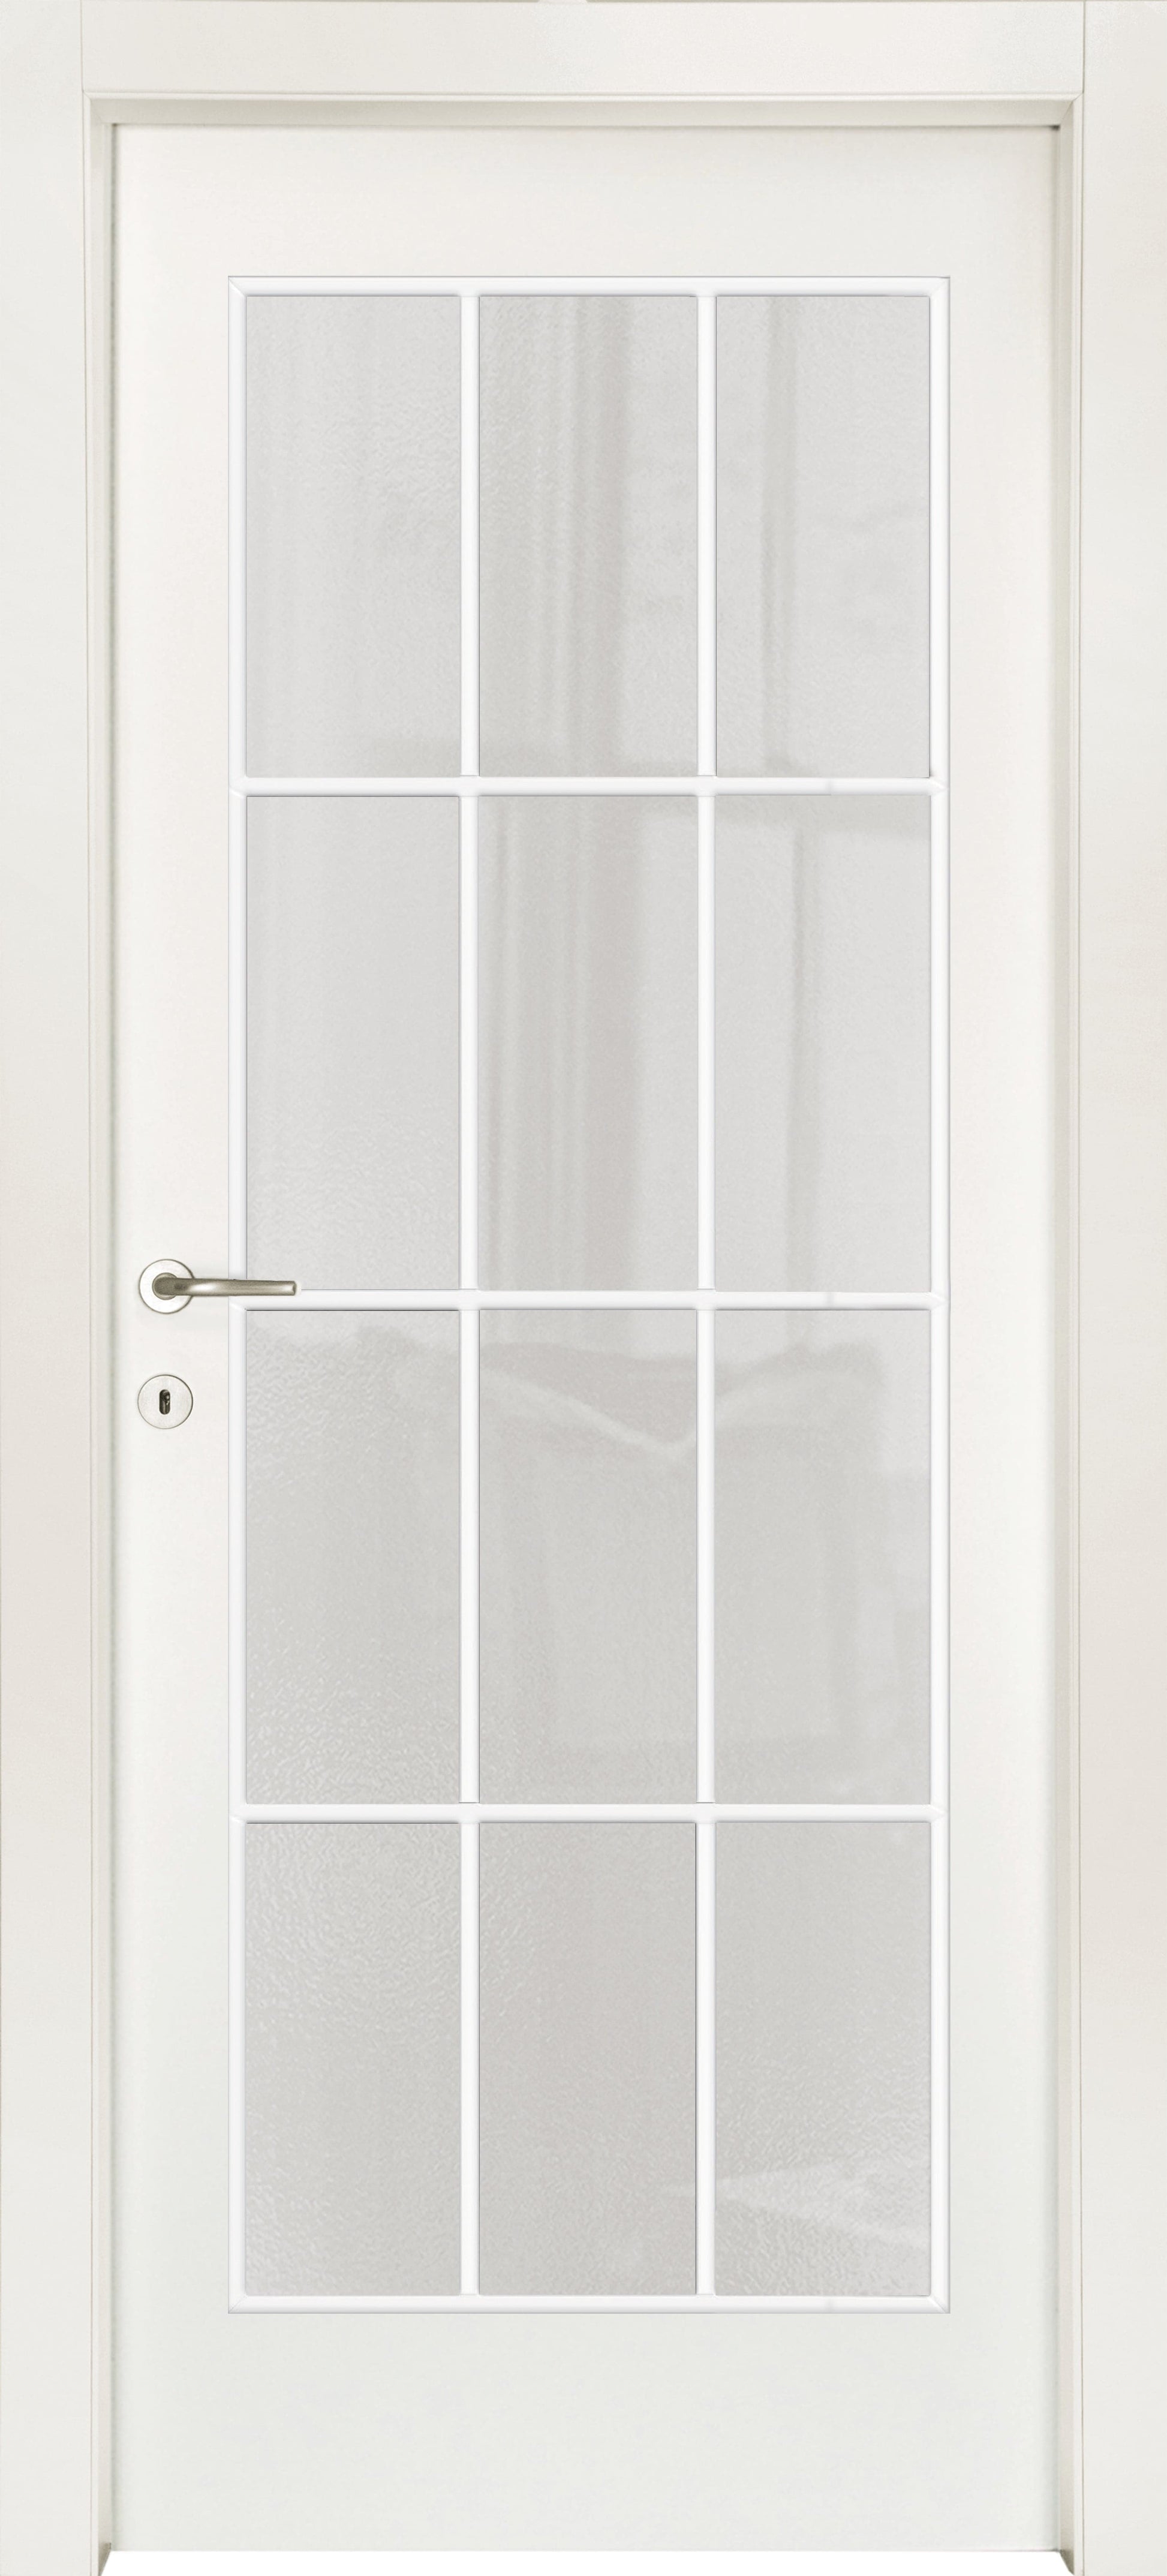 STRAUSS DOOR 60 X 210 LEFT MILK GLASS WITH WHITE MUNTIN BAR